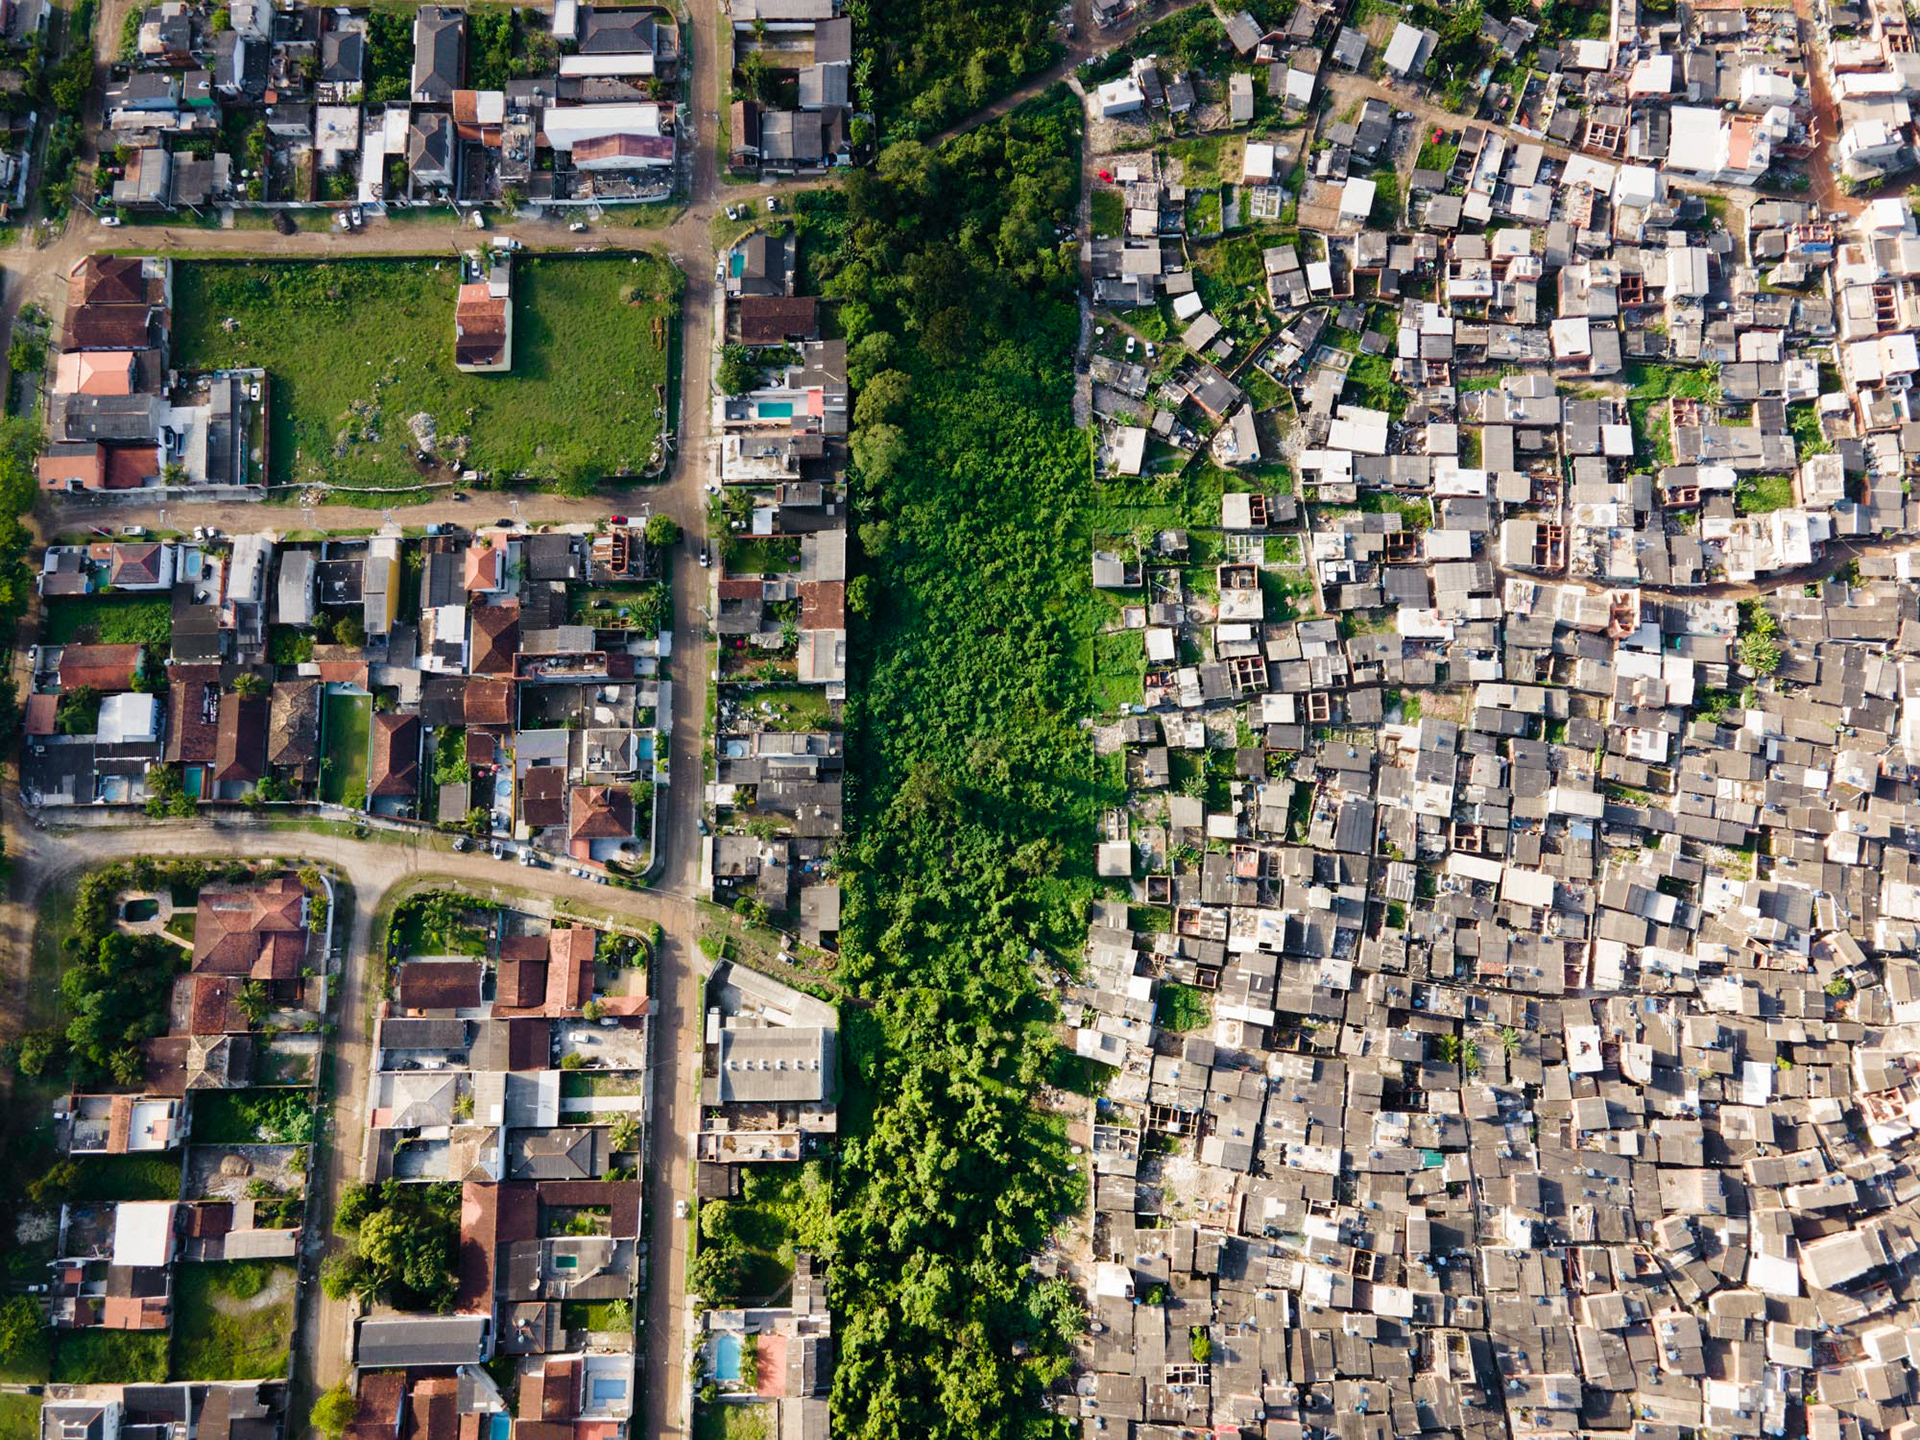 Favela centennial shows Brazil communities' endurance